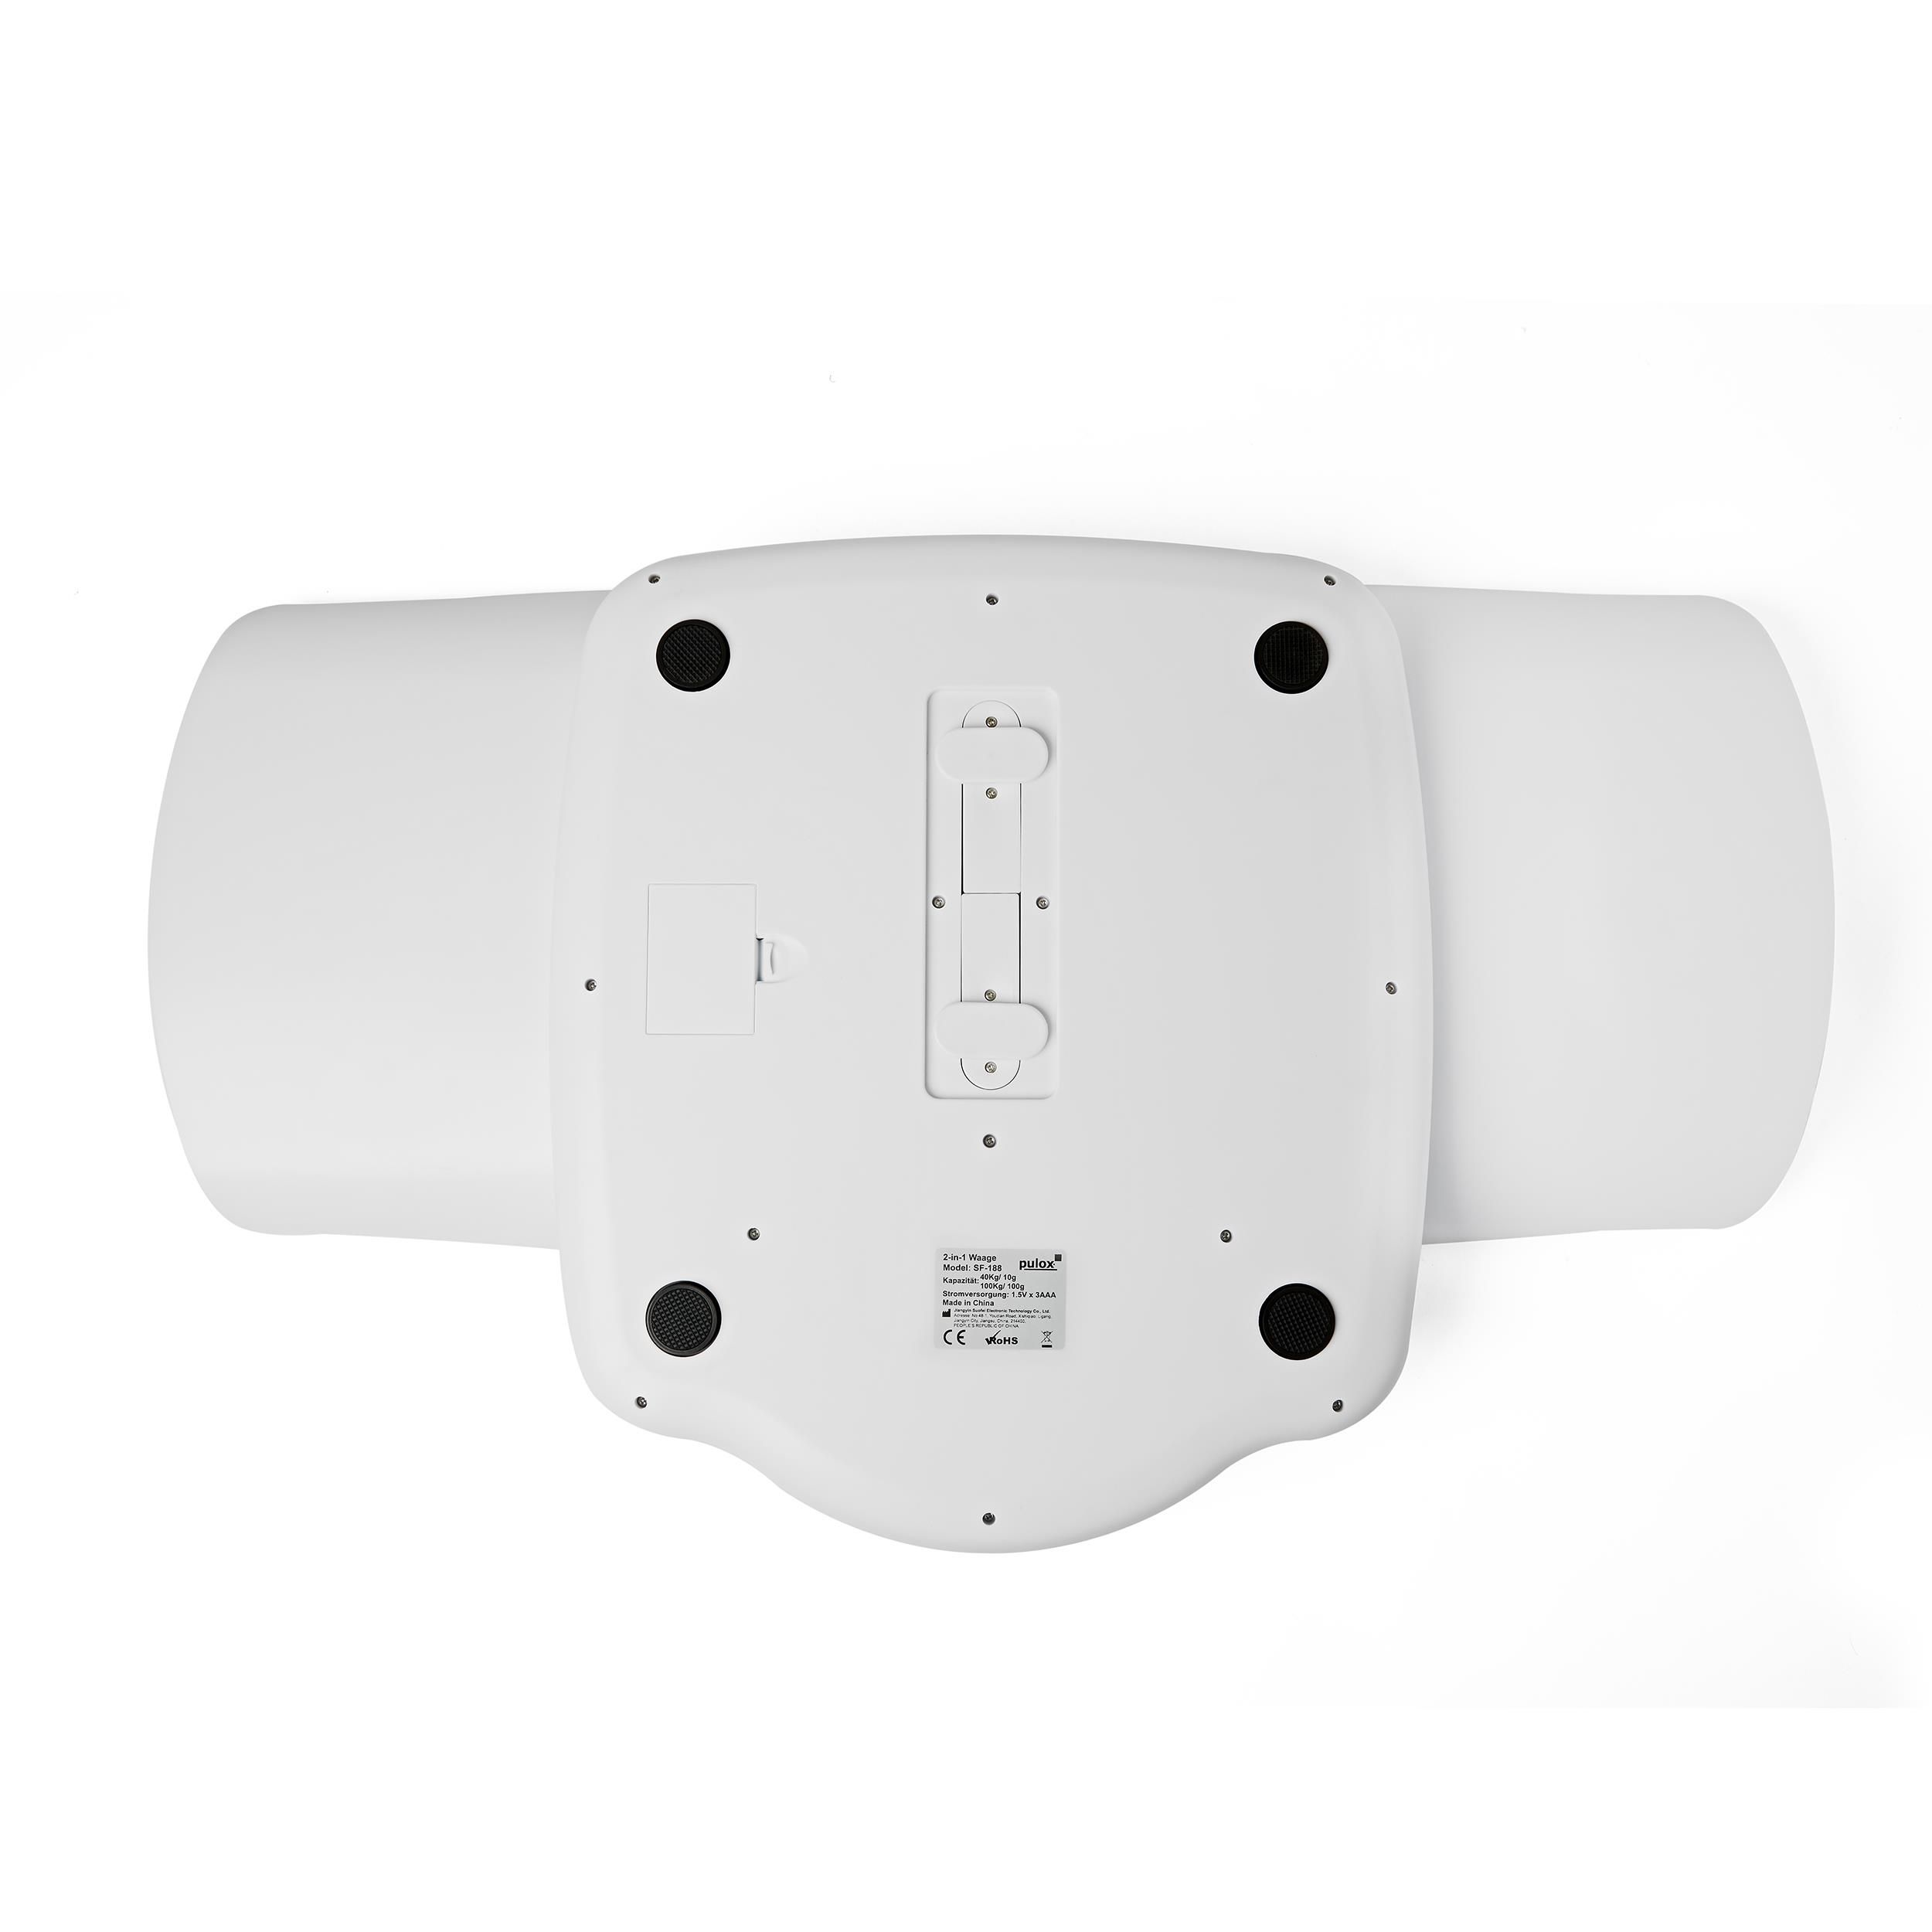 pulox - SF-188 - 2 in 1 digitale Personen- & Babywaage mit abnehmbarer Schale - bis 100 kg - Weiß